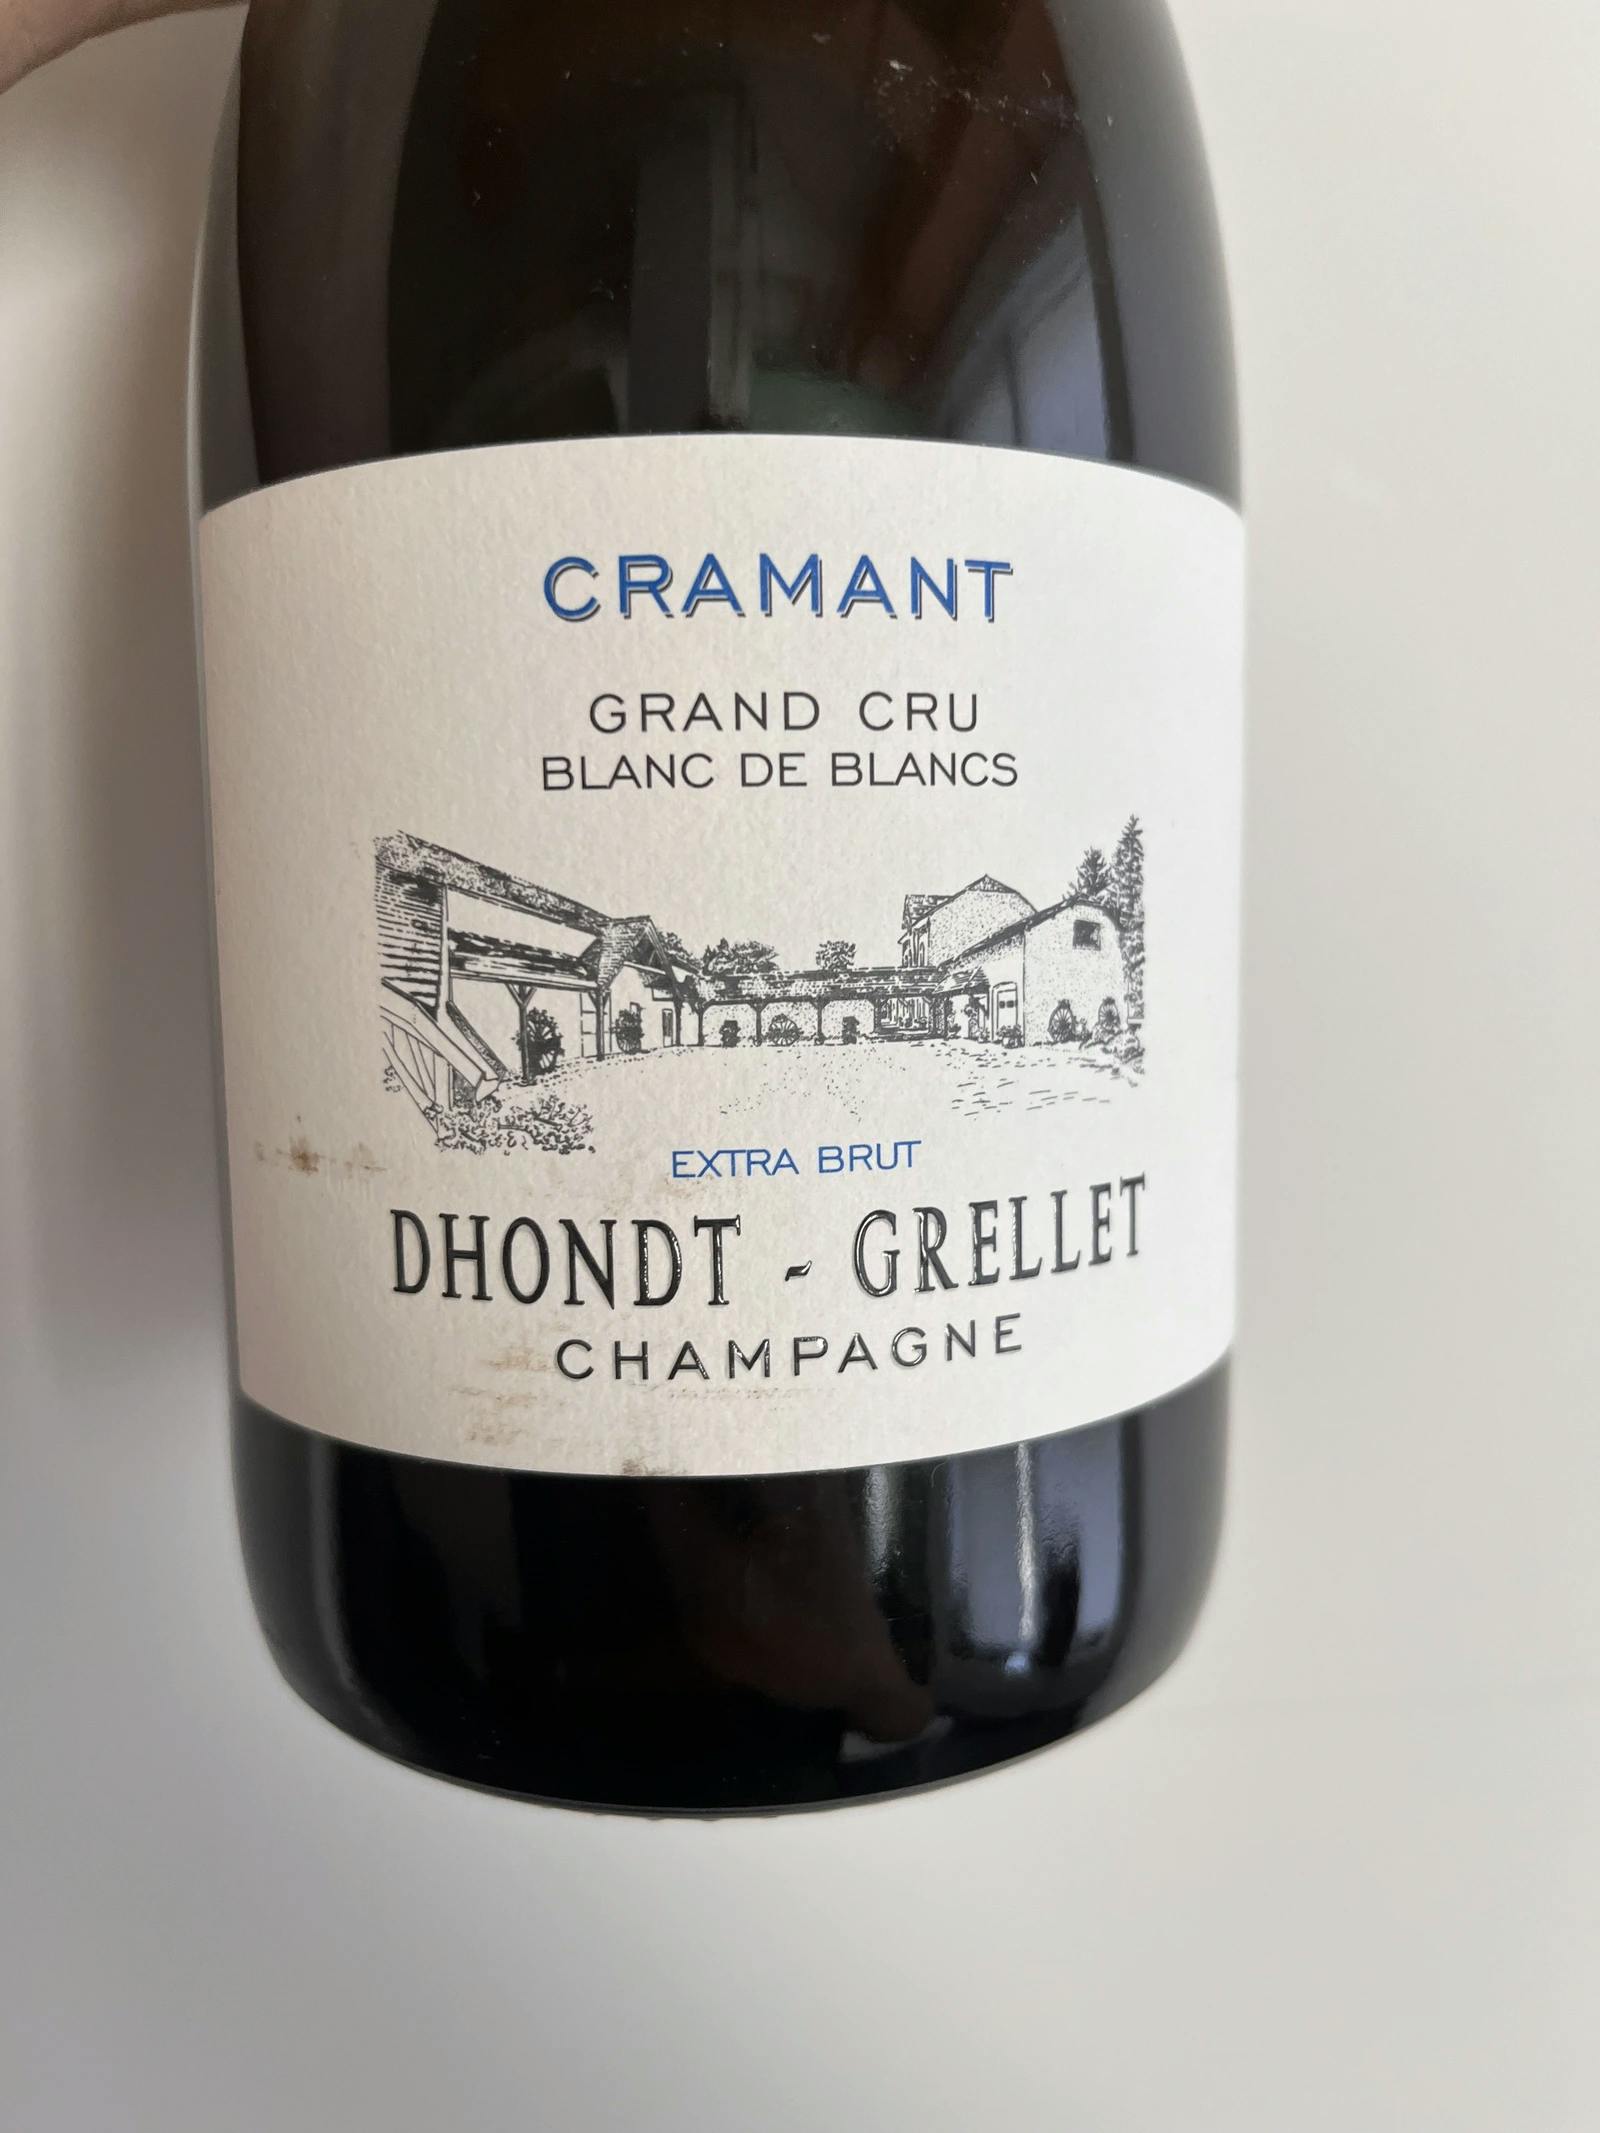 Dhondt-Grellet Extra-Brut Blanc de Blancs Grand Cru Cramant (d2021) NV